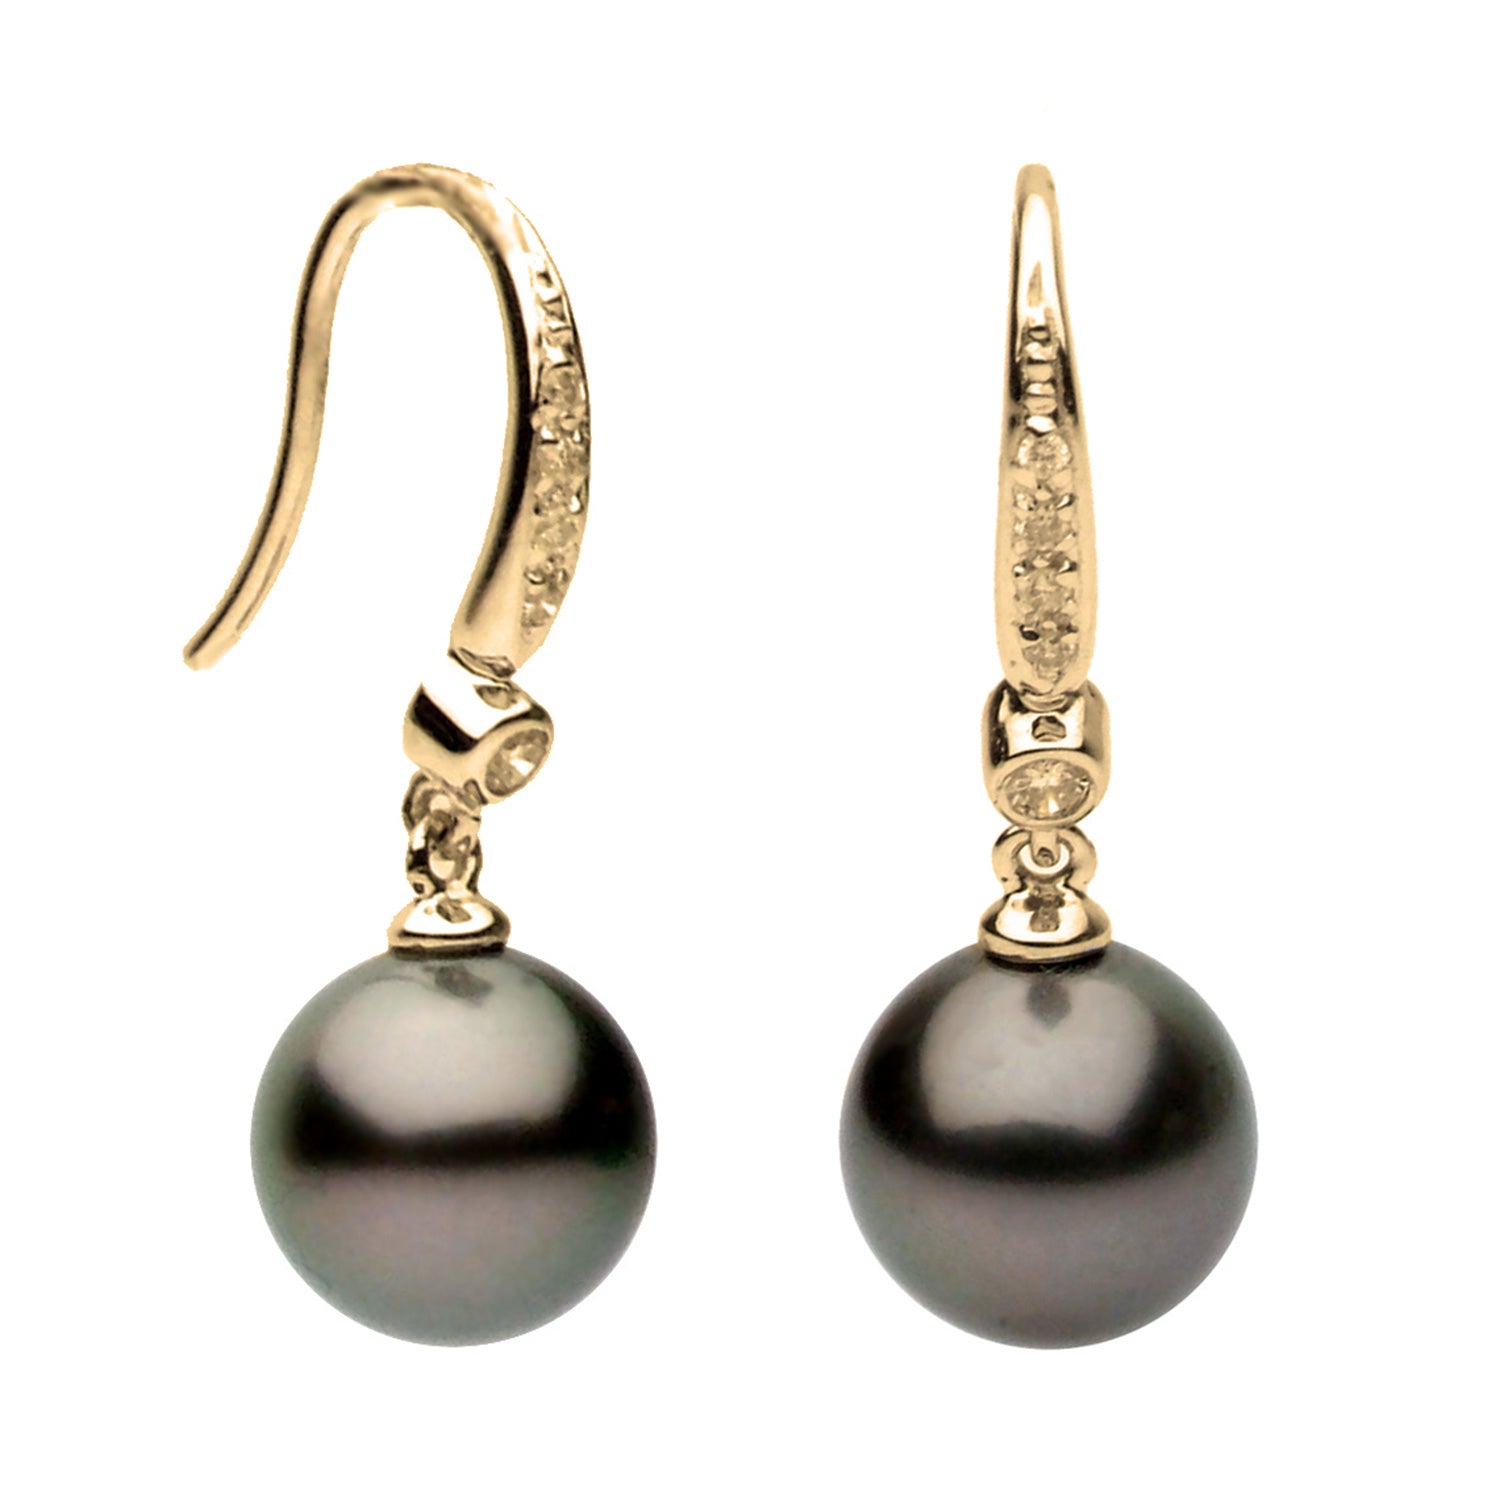 14KY Golden South Sea Pearl Earrings, 9-10mm